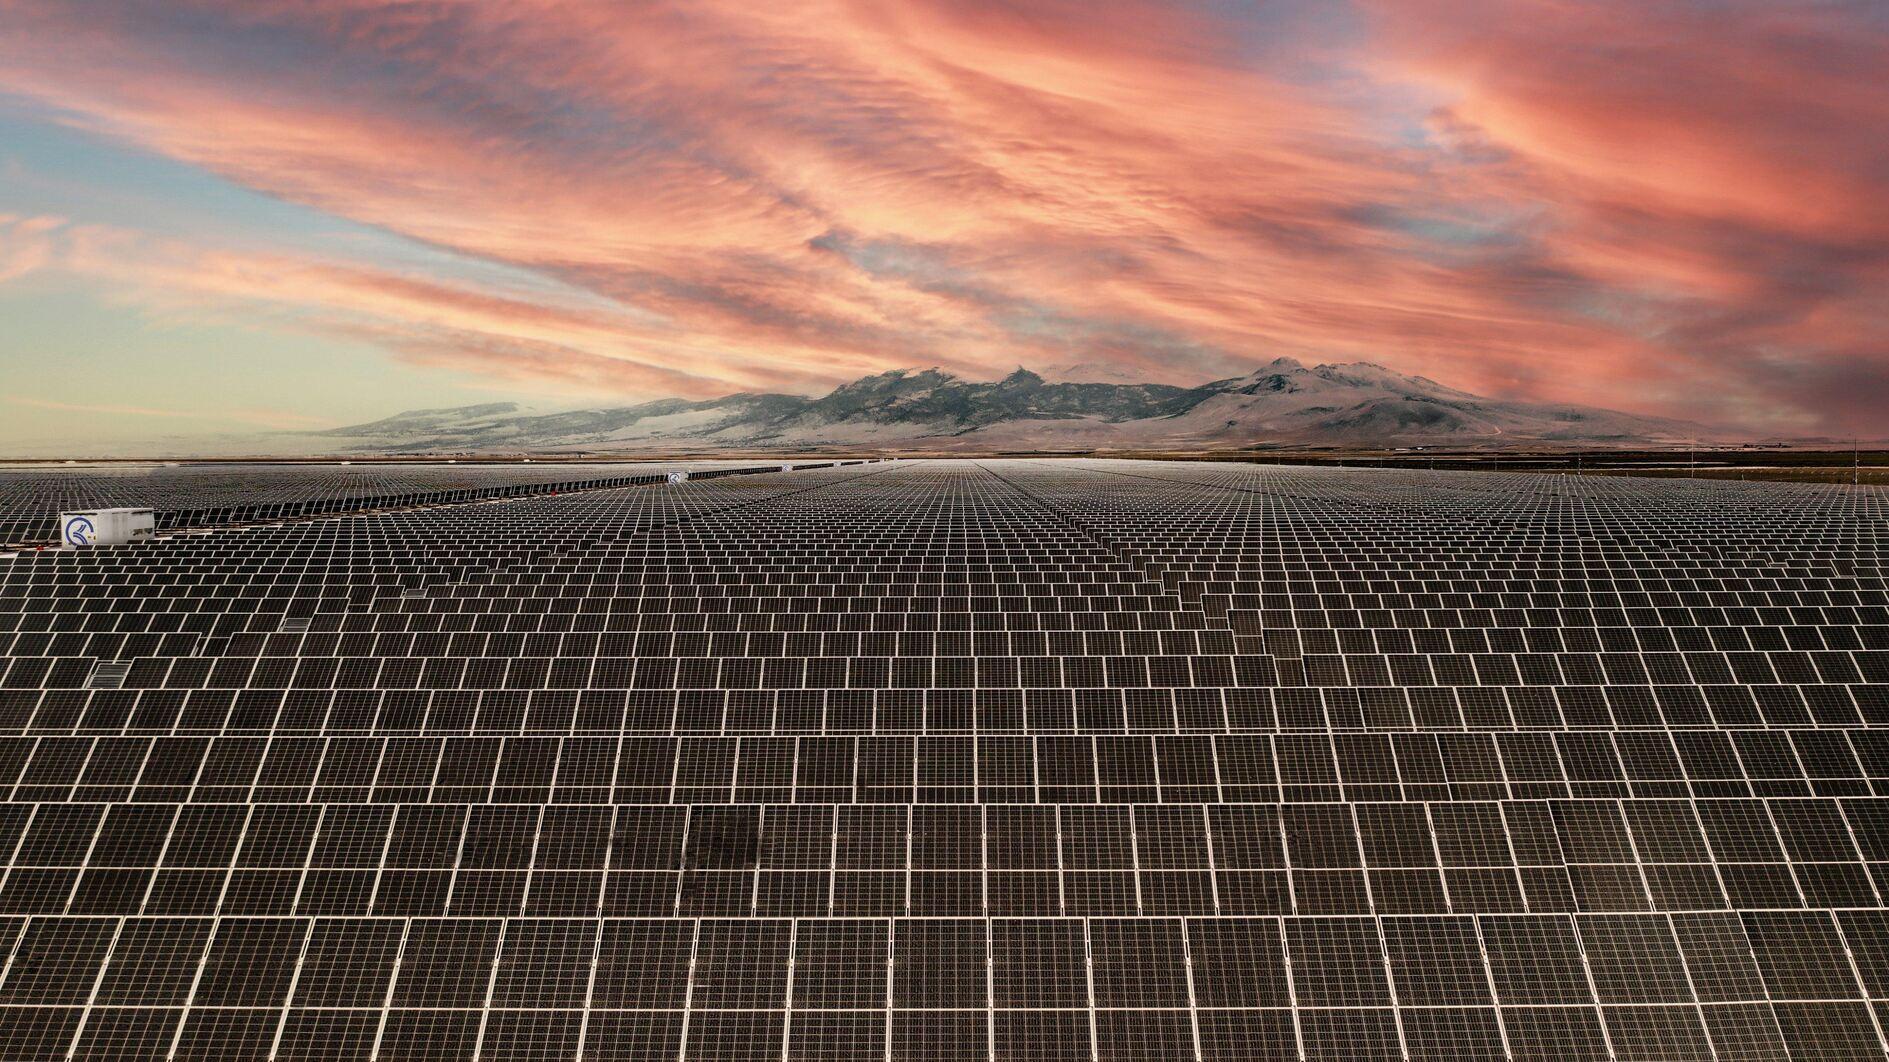 Türkiye staat op de 11e plaats wat betreft de wereldwijde capaciteit voor hernieuwbare energie